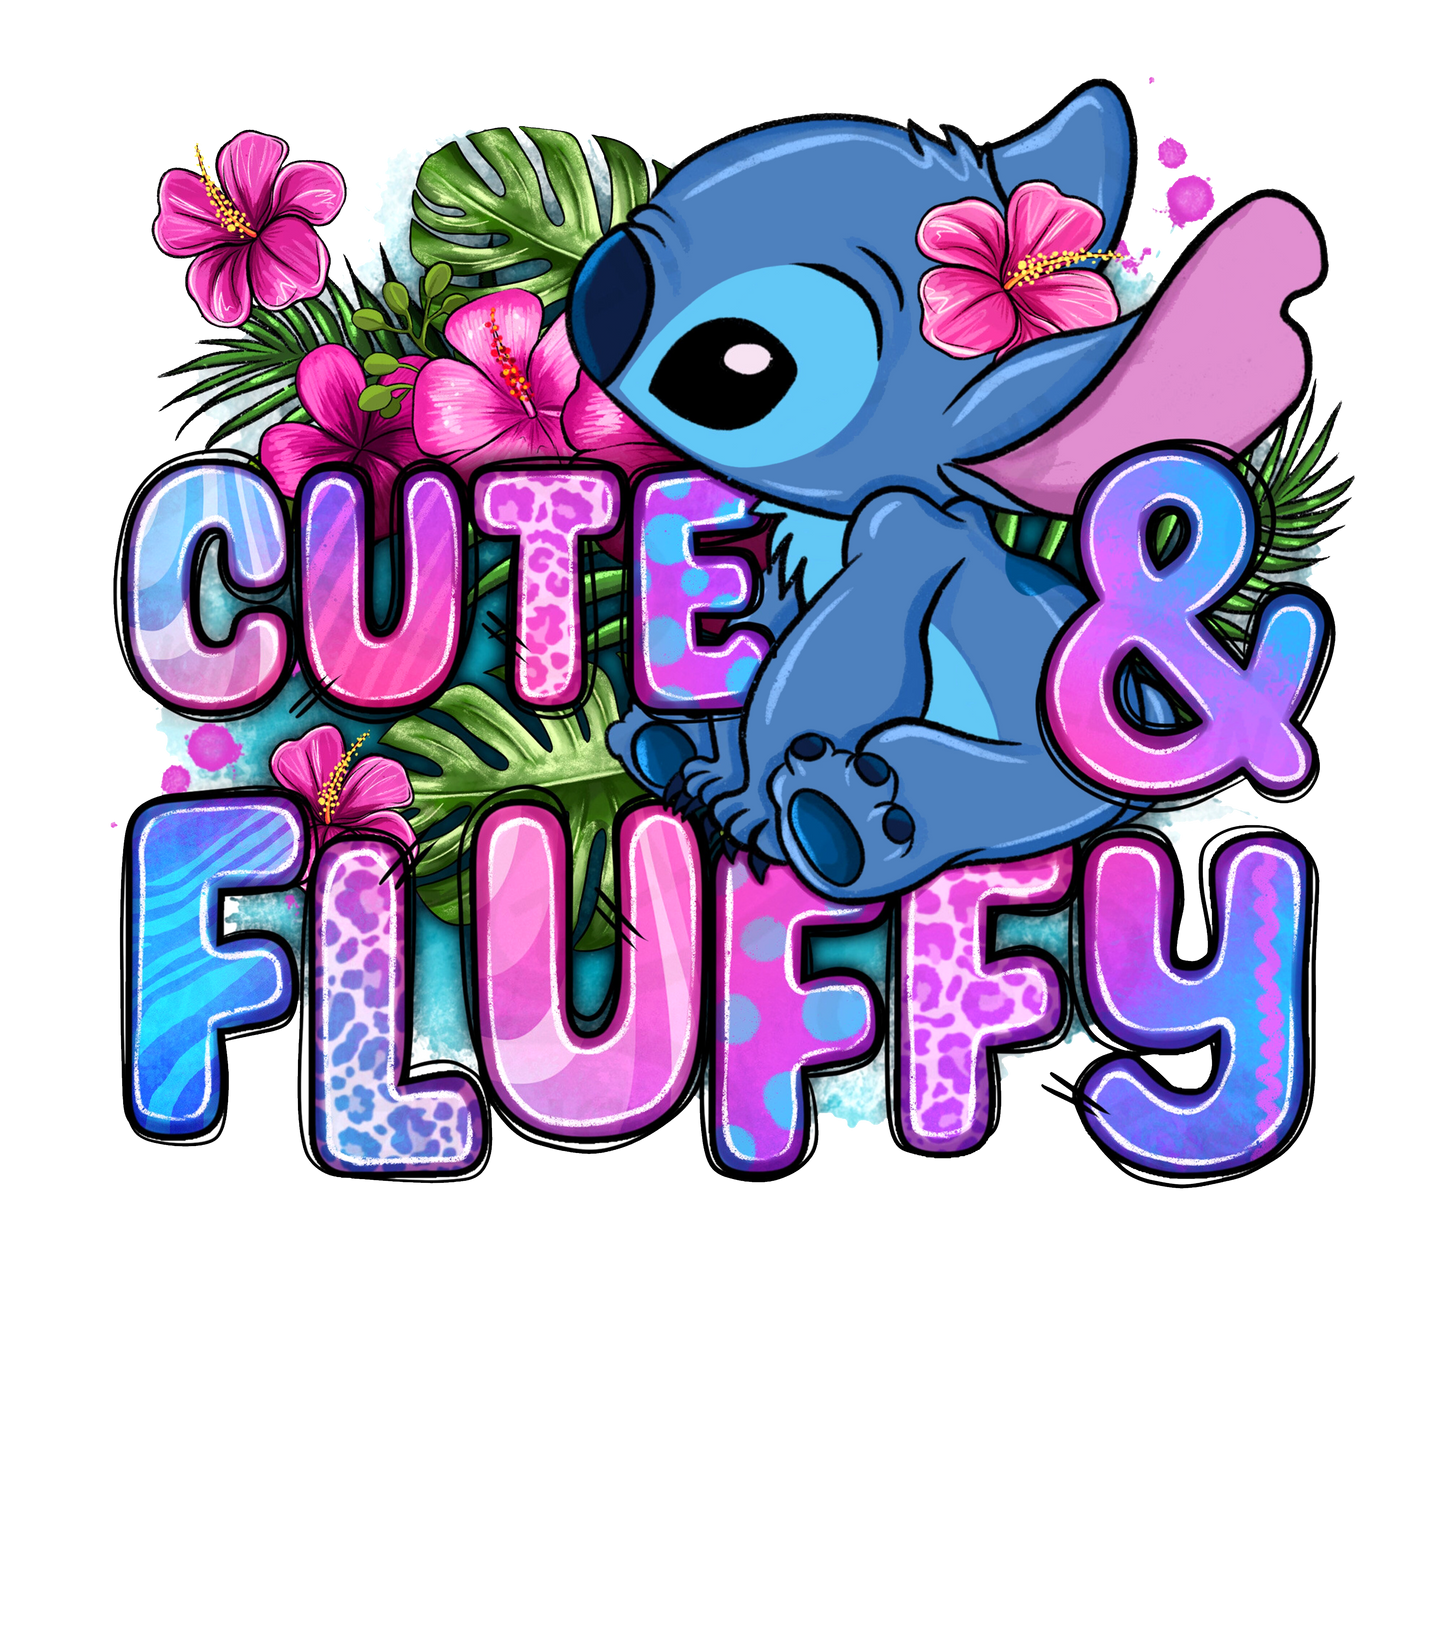 CUTE & FLUFFY